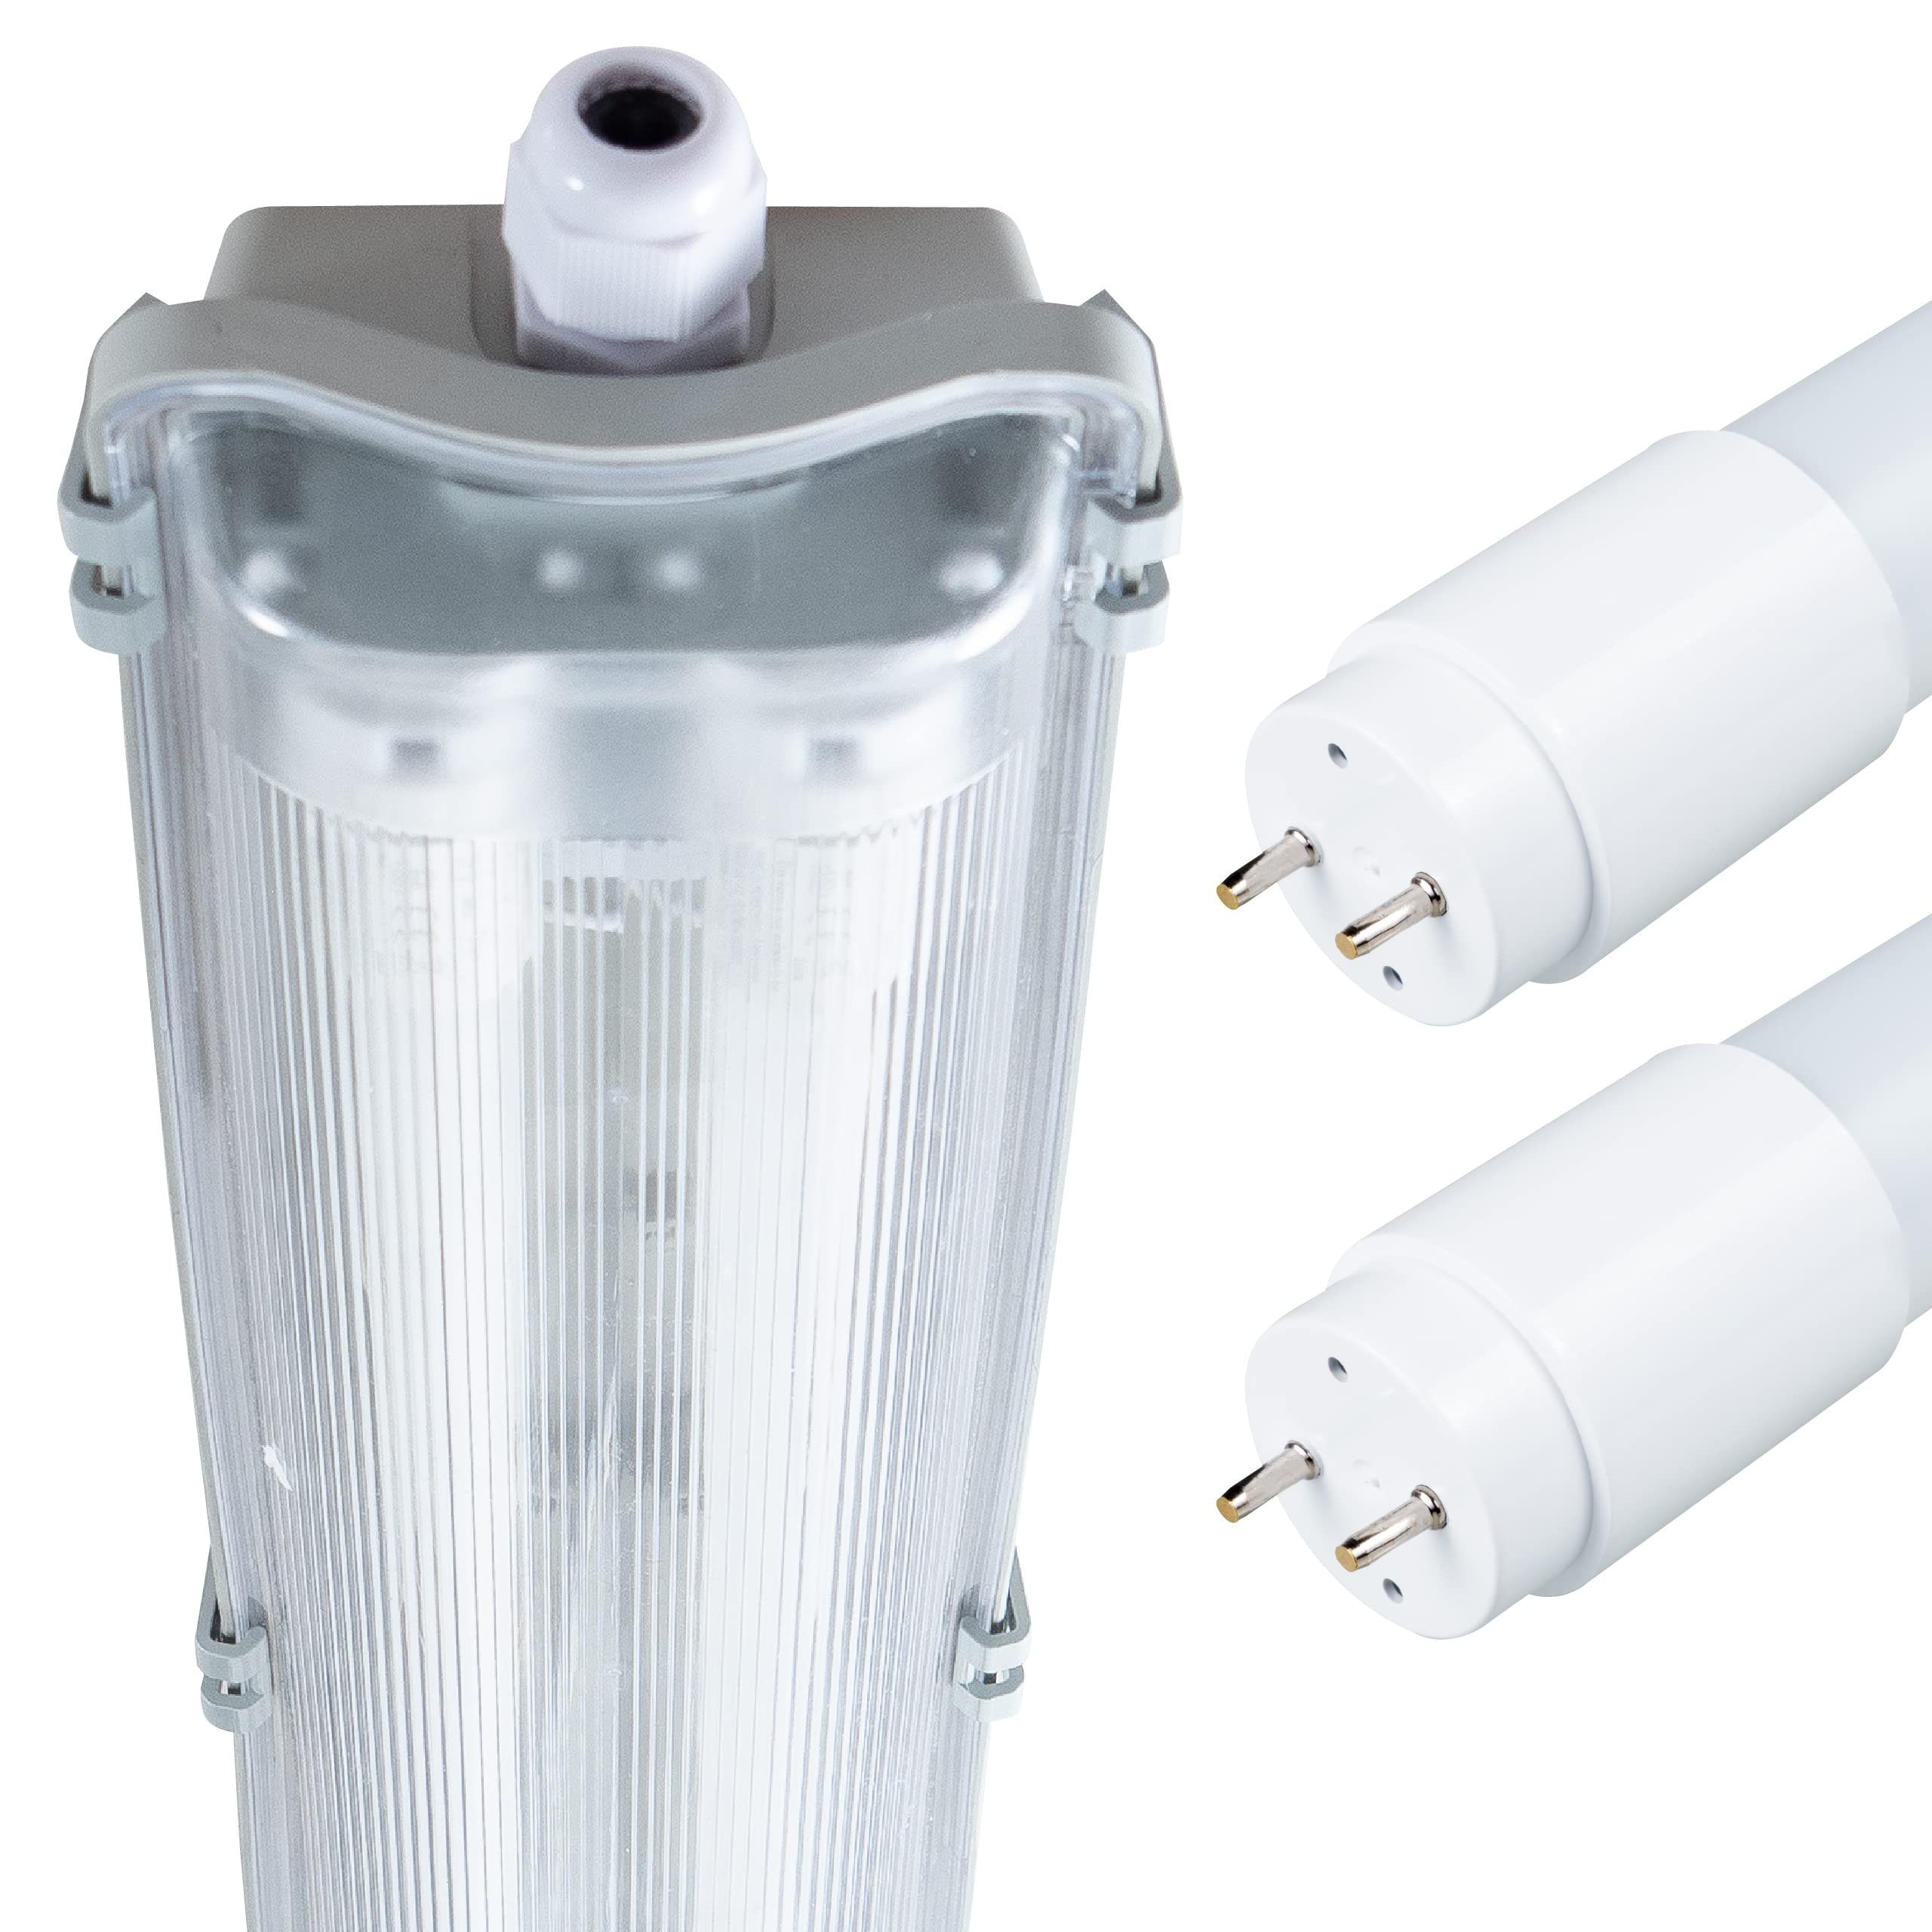 Feuchtraumleuchte LED Kunststoff Lumen, LED-Röhre, 120 2x proventa Deckenleuchte cm, IP65, 36 W, 4320